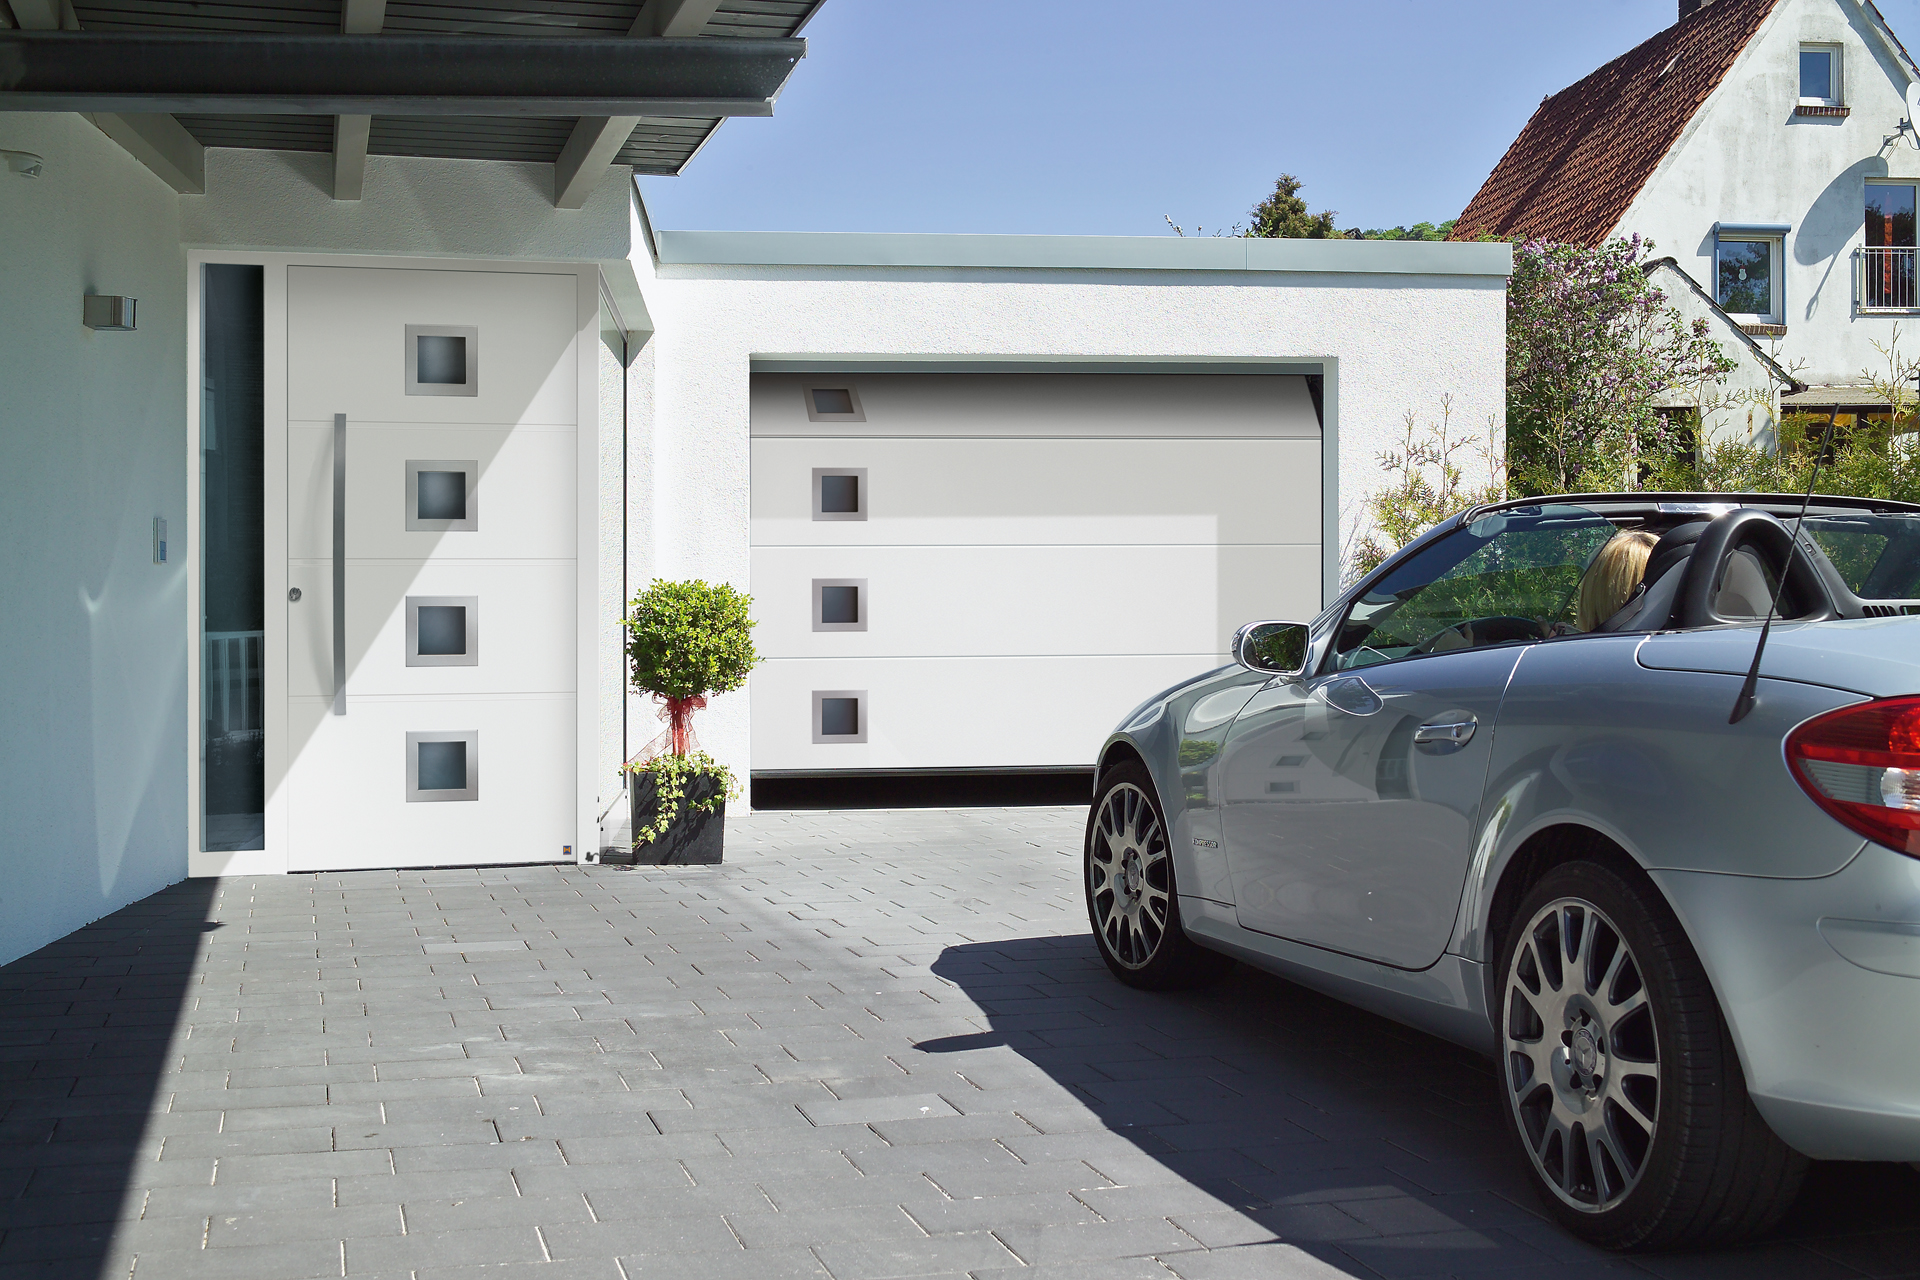 Haustür & Garage aufeinander abgestimmt durch modernes Design